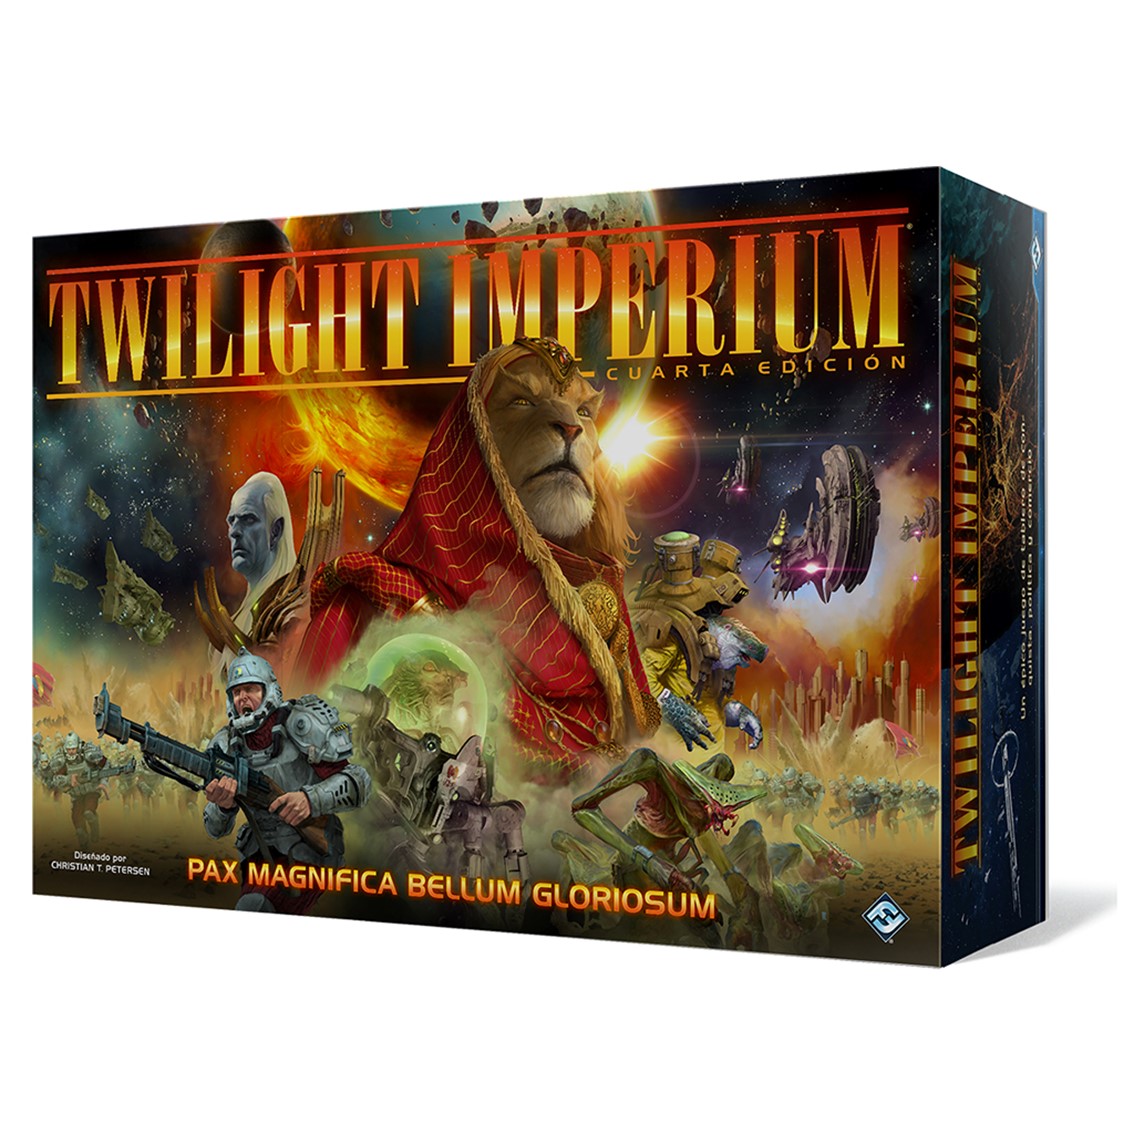 Twilight Imperium Cuarta Edicion Juego de Tablero - Tematica Ciencia Ficcion - De 3 a 6 Jugadores - 